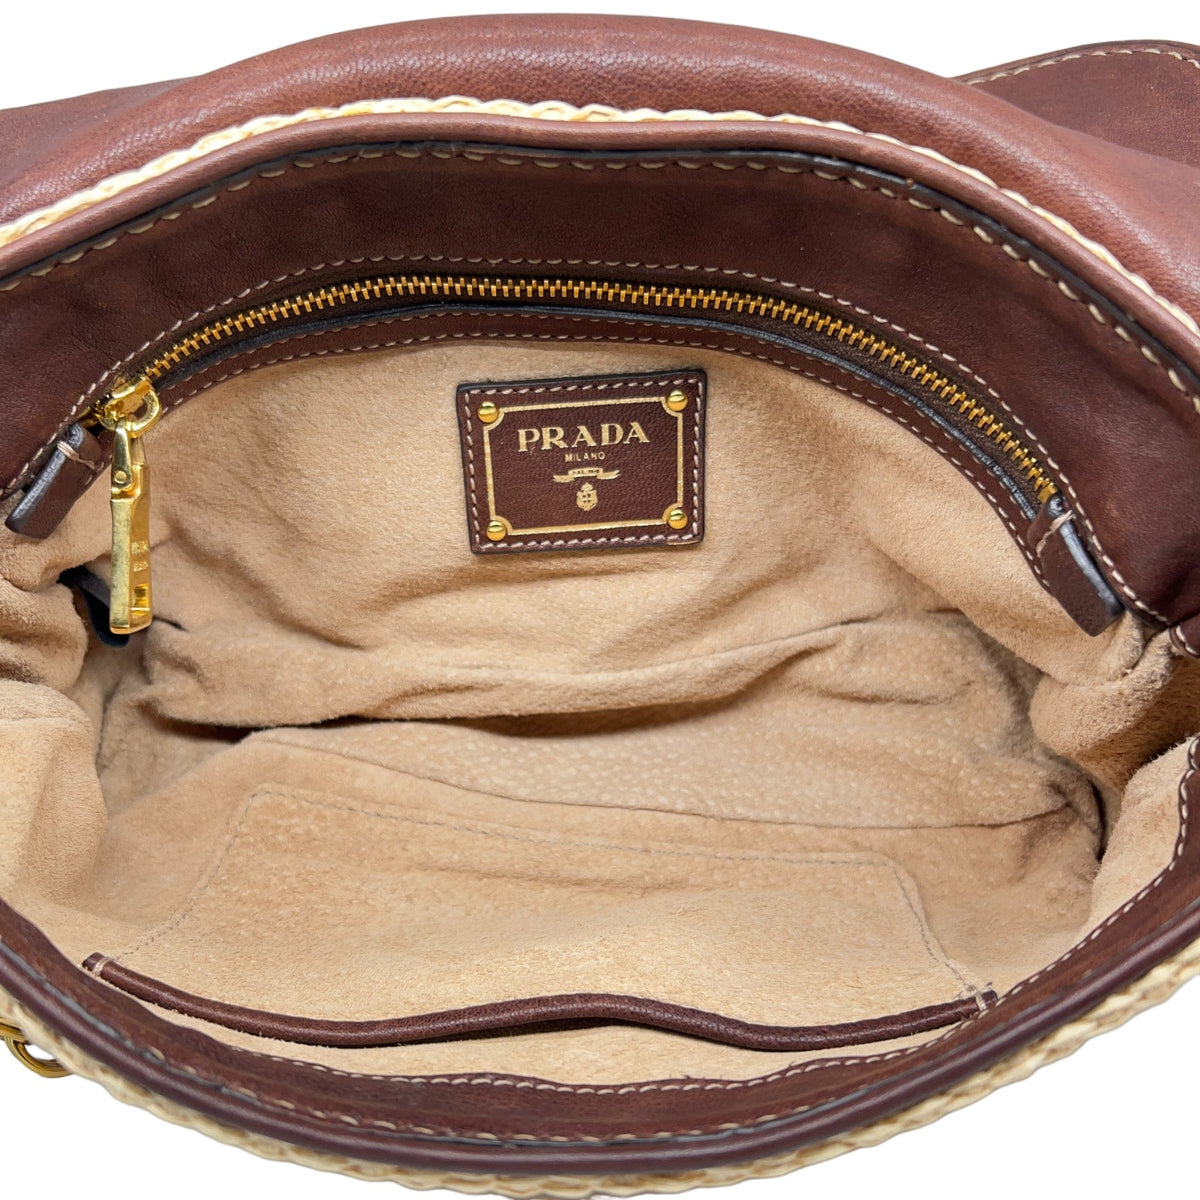 Prada Vintage - Leather Hobo Bag - Brown - Leather Handbag